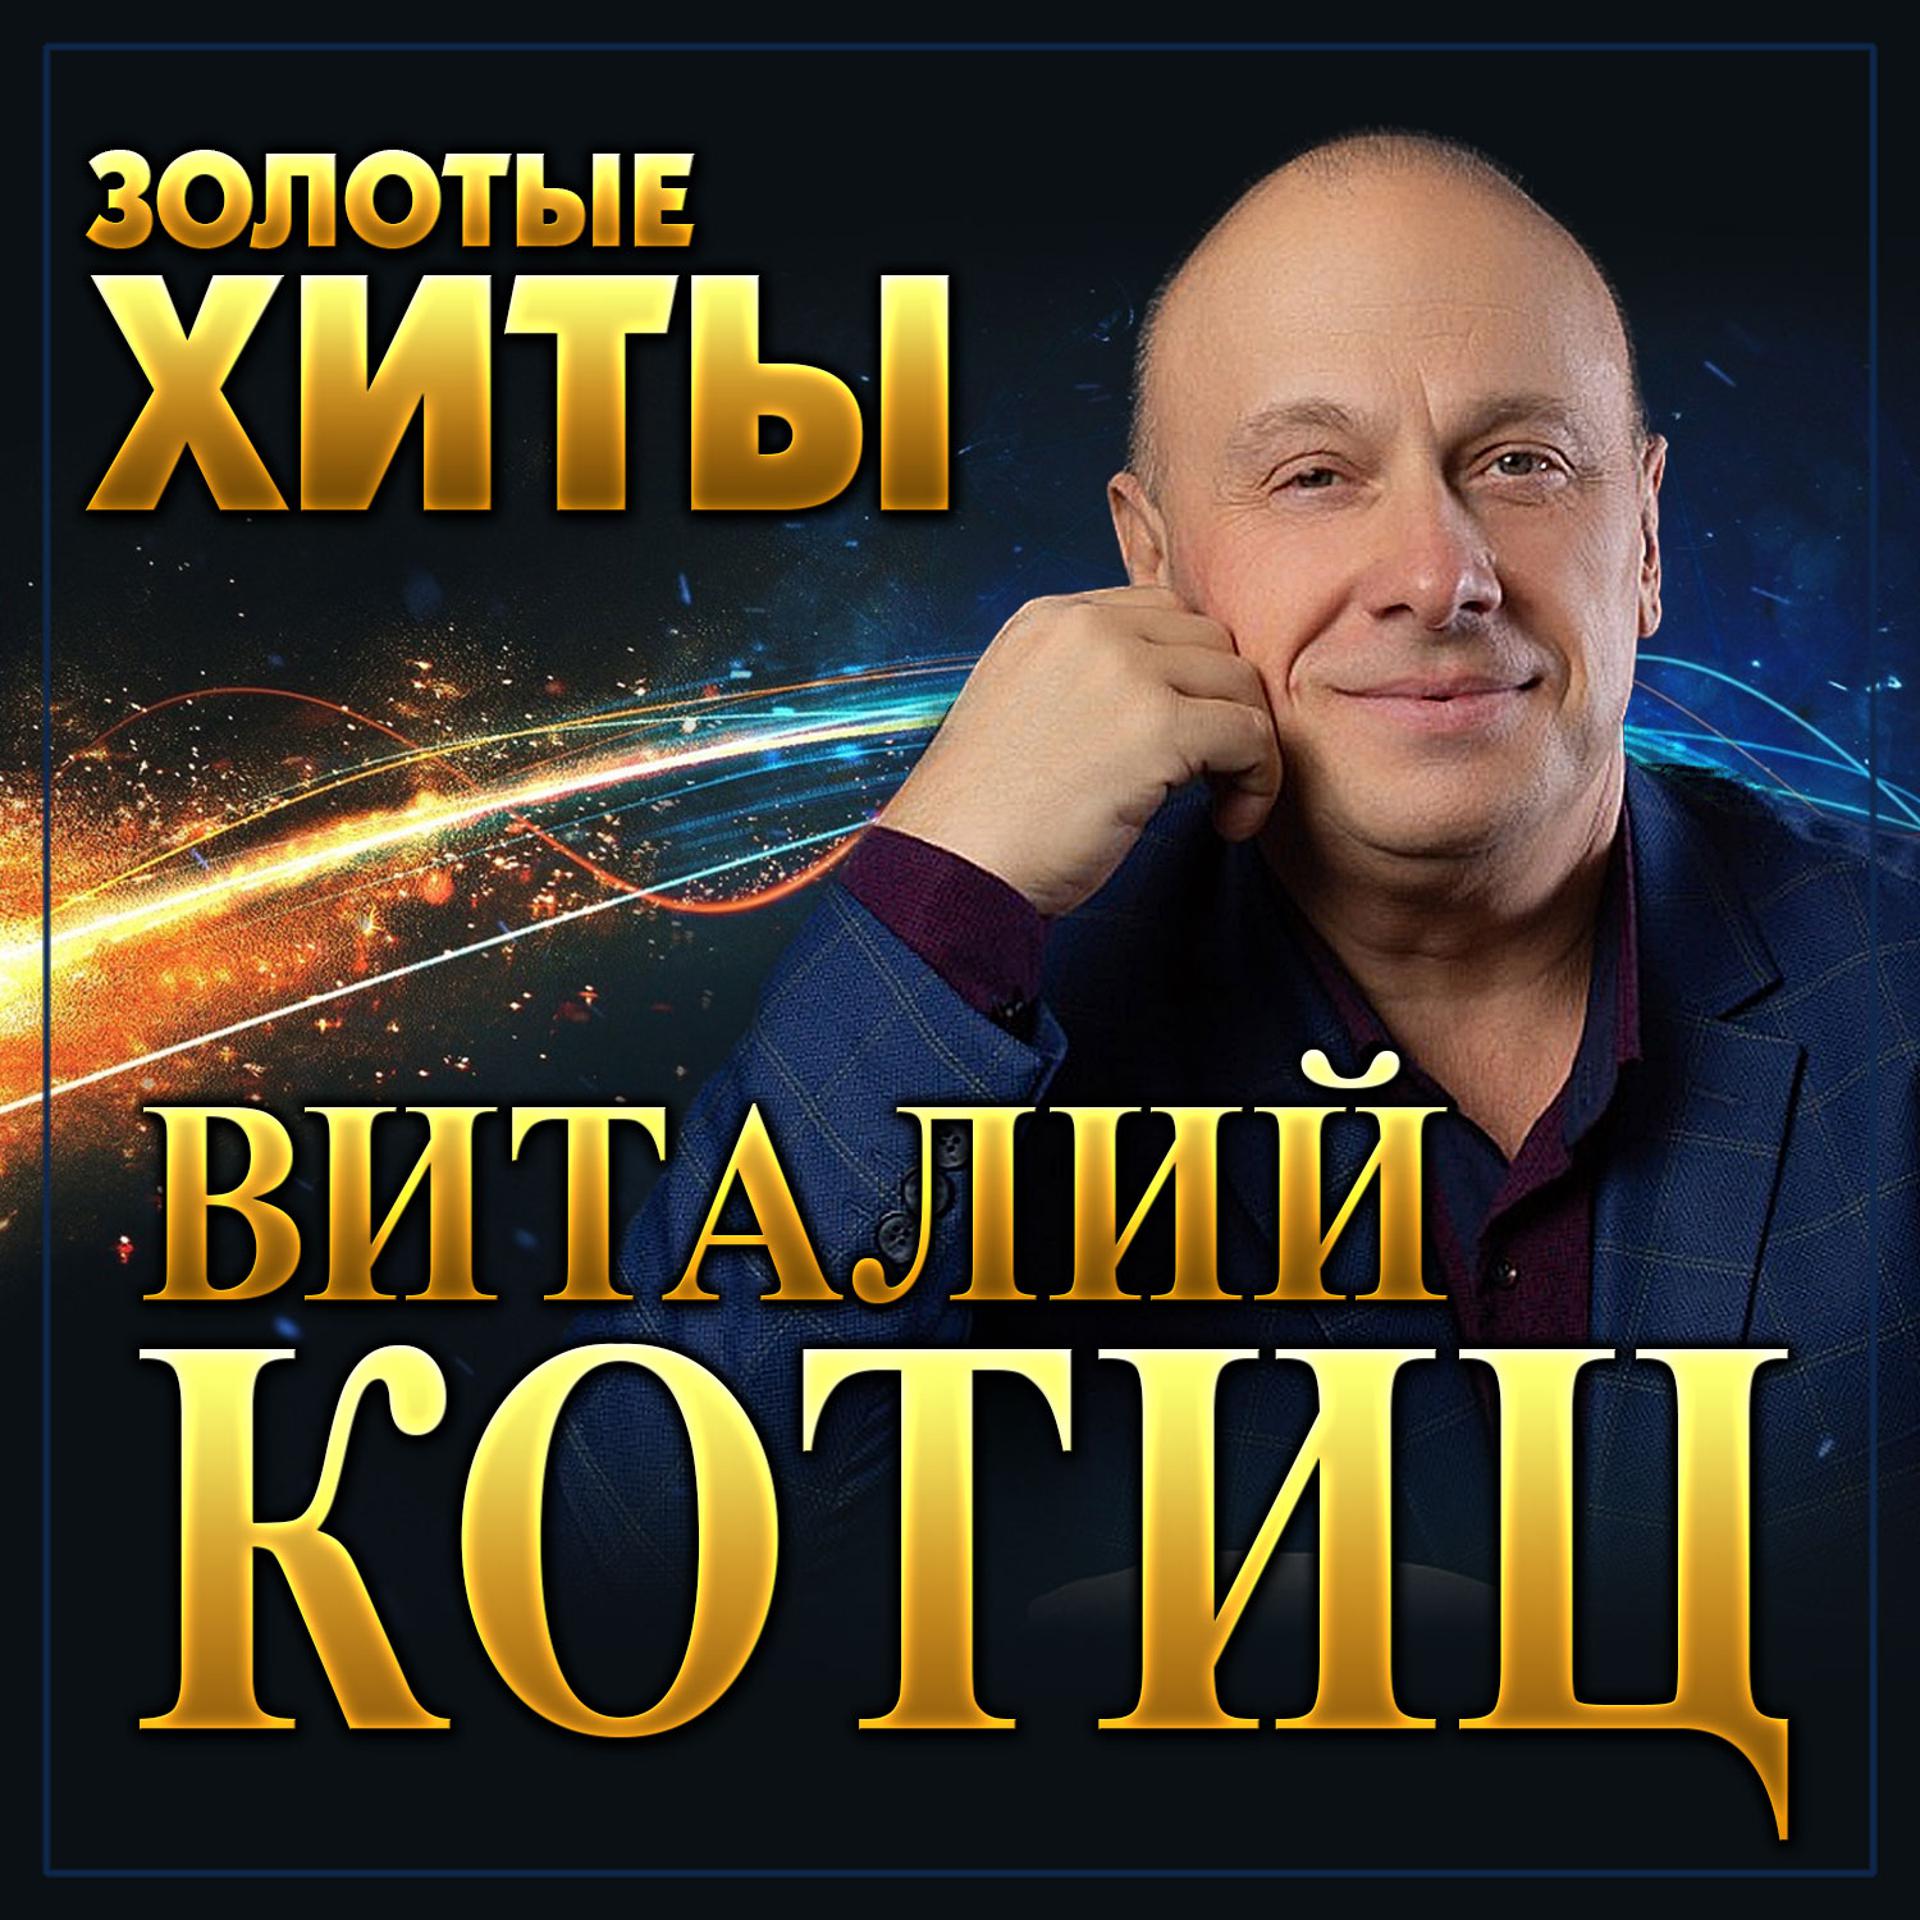 Постер альбома Виталий Котиц "Золотые хиты"